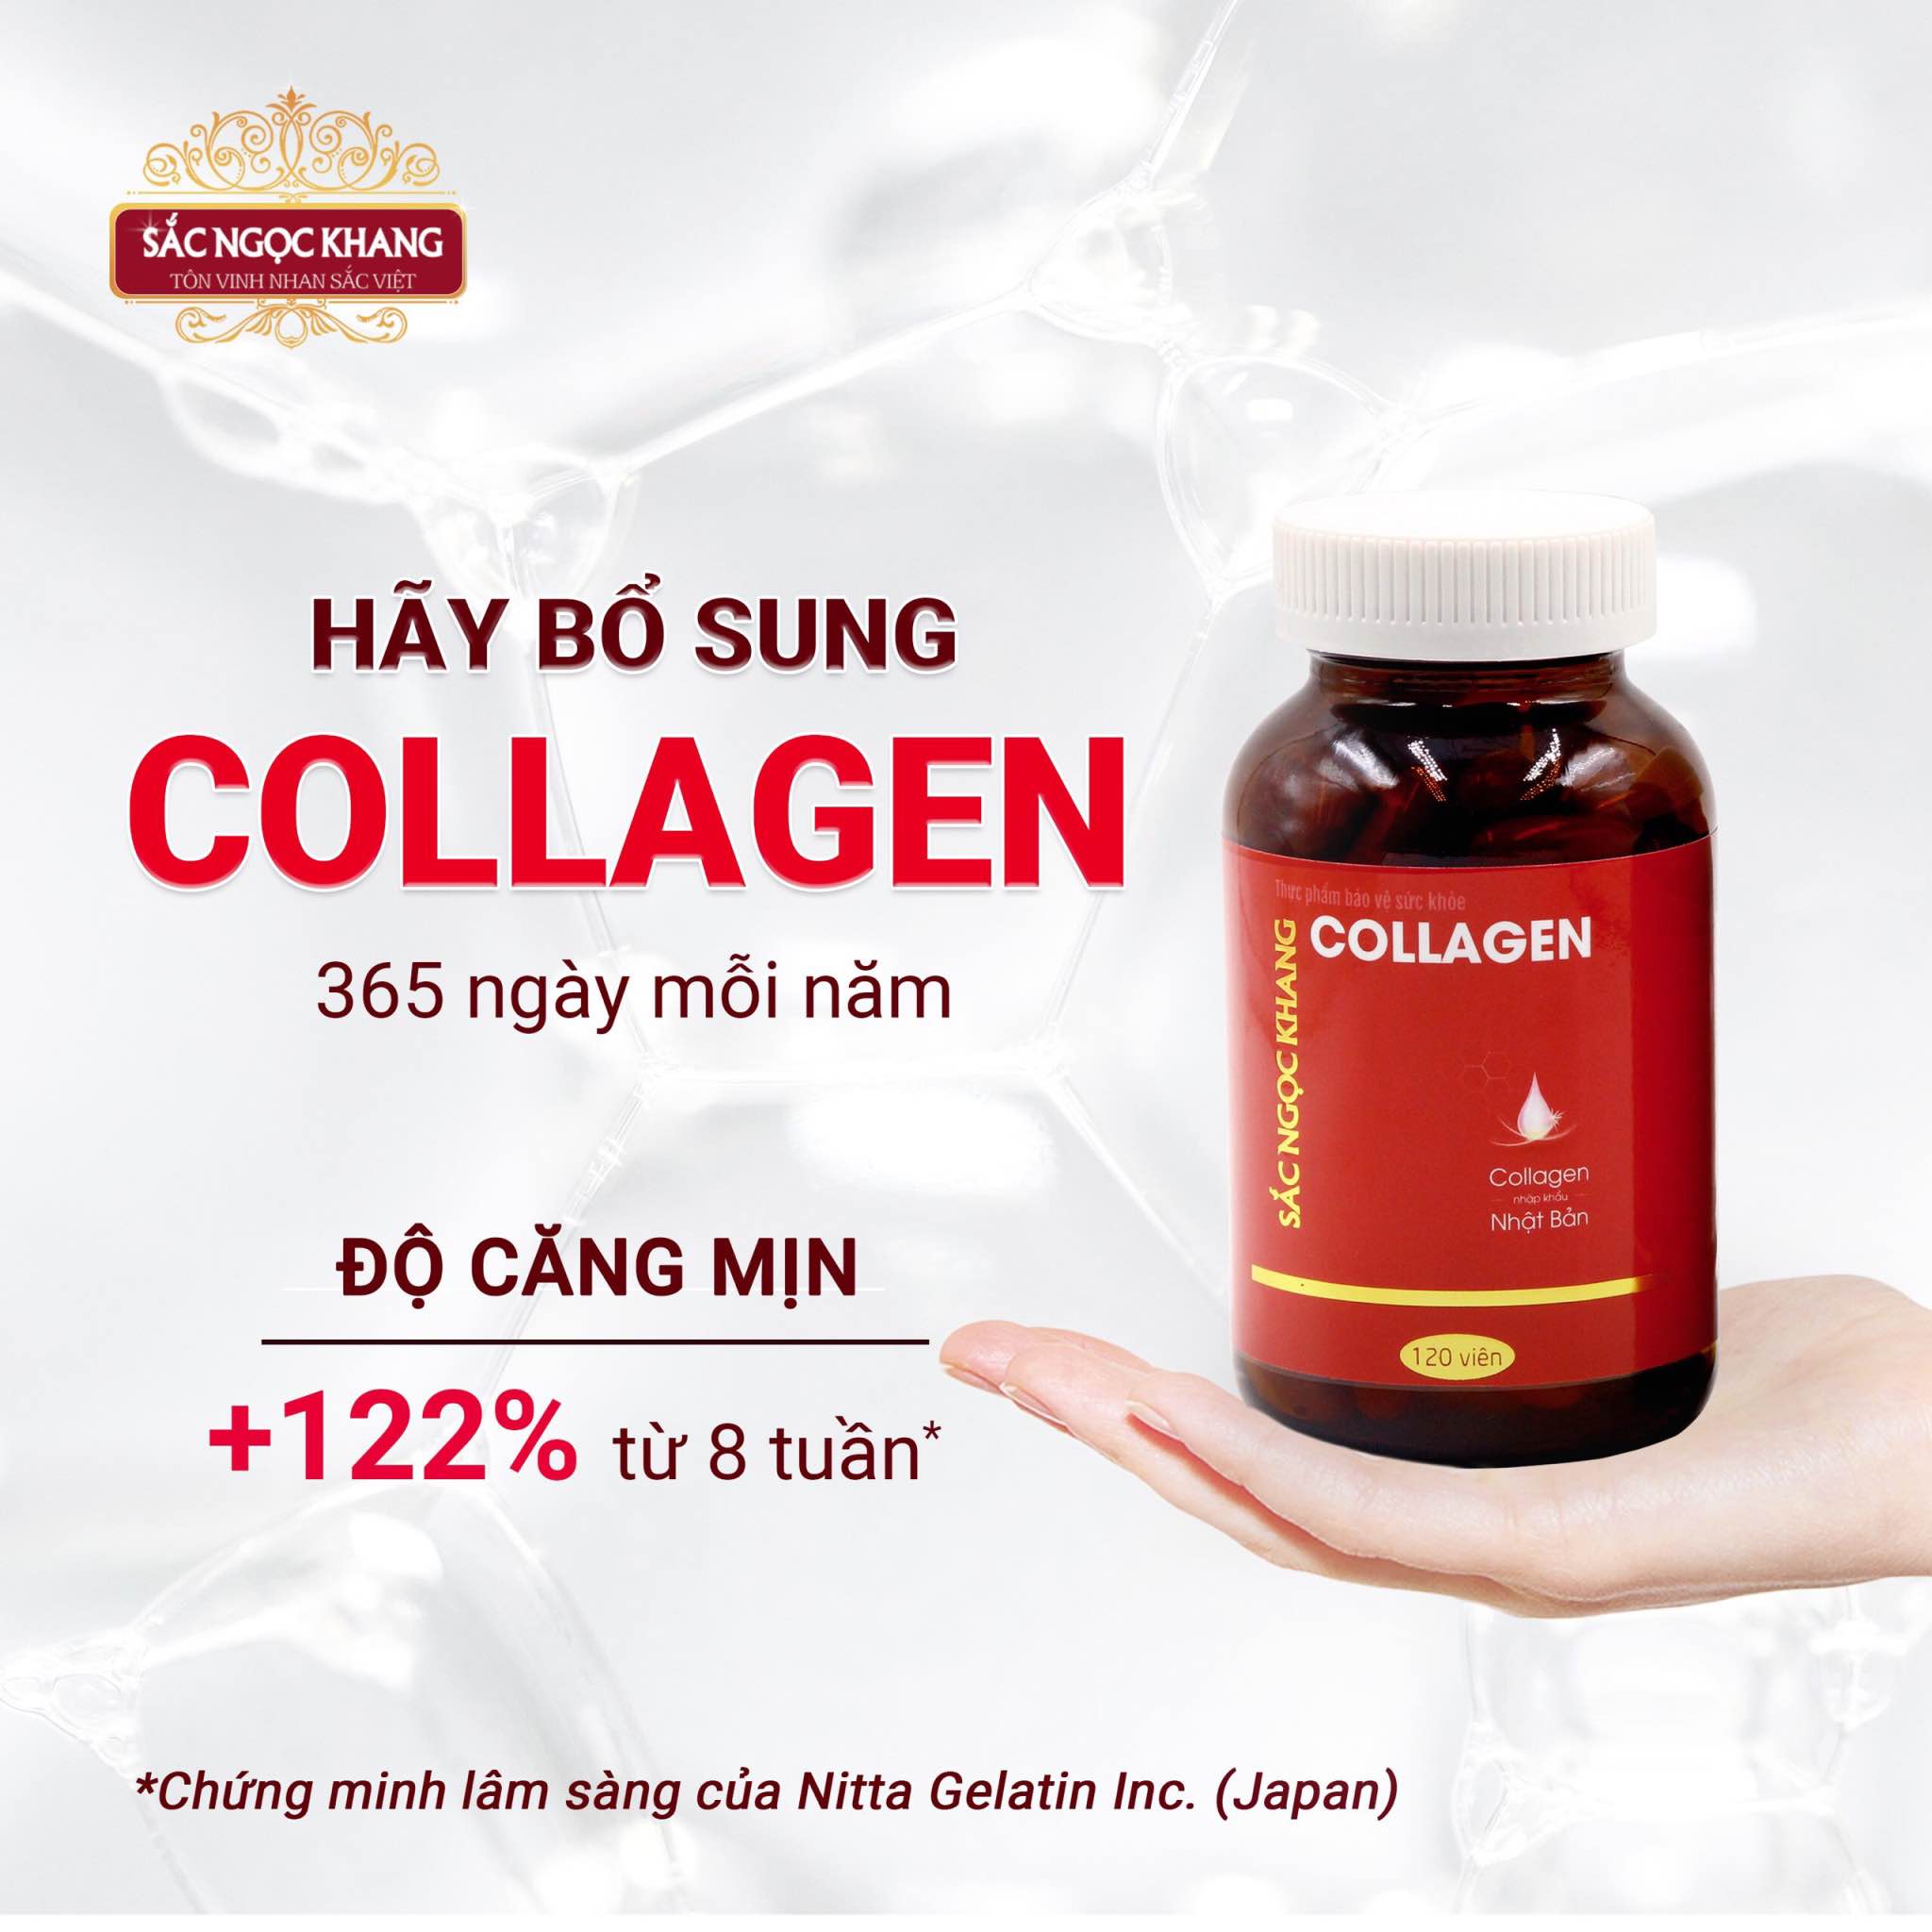 Viên uống Collagen Sắc Ngọc Khang thế hệ mớI Hộp 60 viên giúp sáng da, giảm nếp nhăn - đốm nâu, nuôi dưỡng và làm đẹp da , tóc, móng